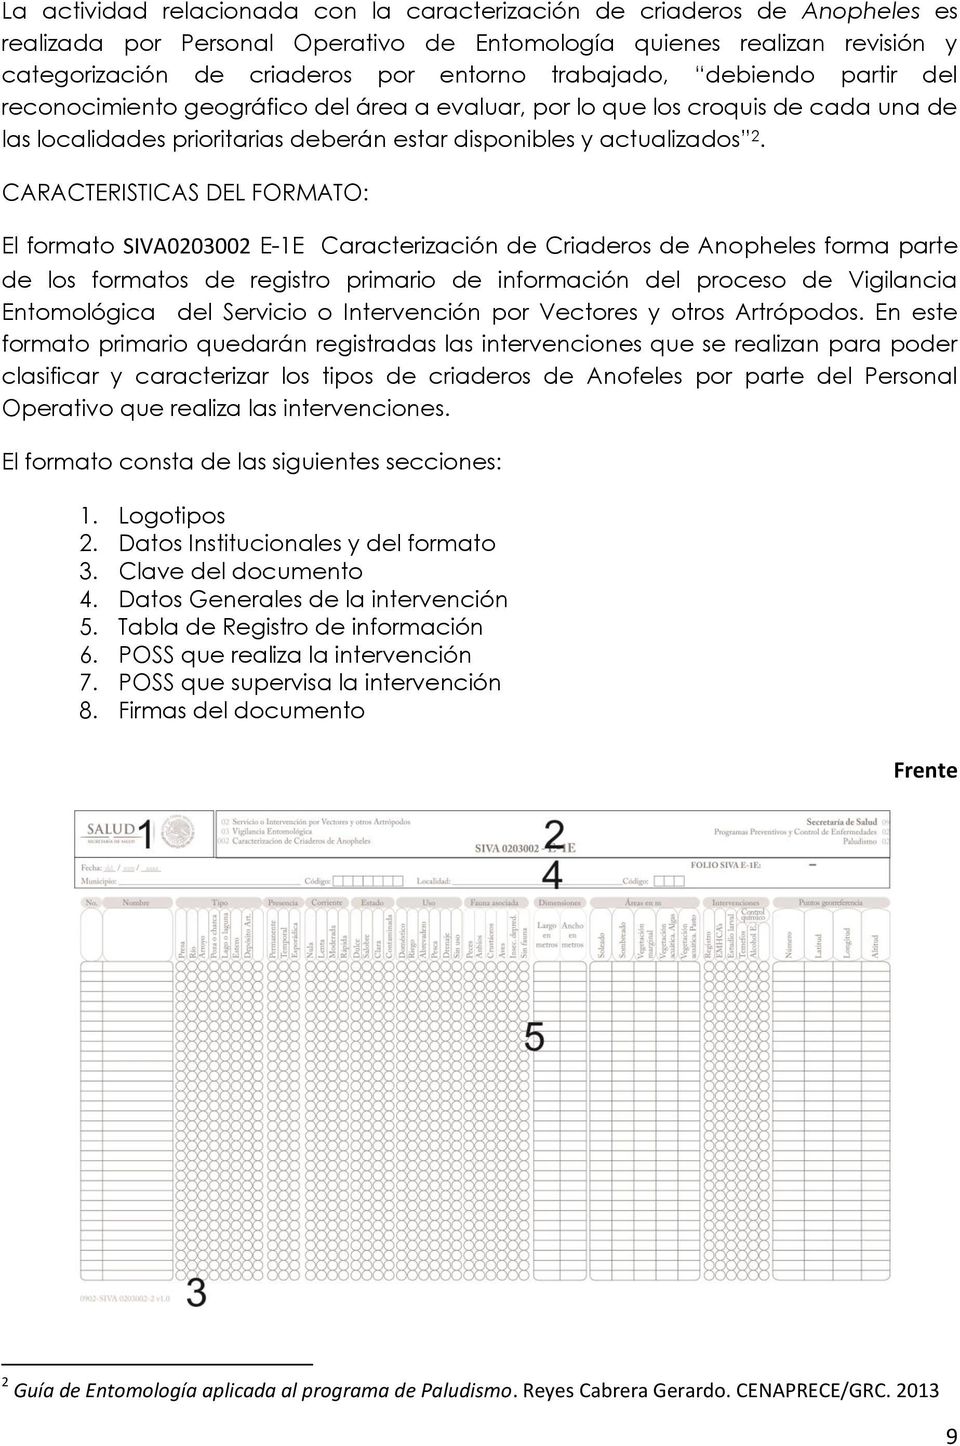 CARACTERISTICAS DEL FORMATO: El formato SIVA0203002 E-1E Caracterización de Criaderos de Anopheles forma parte de los formatos de registro primario de información del proceso de Vigilancia